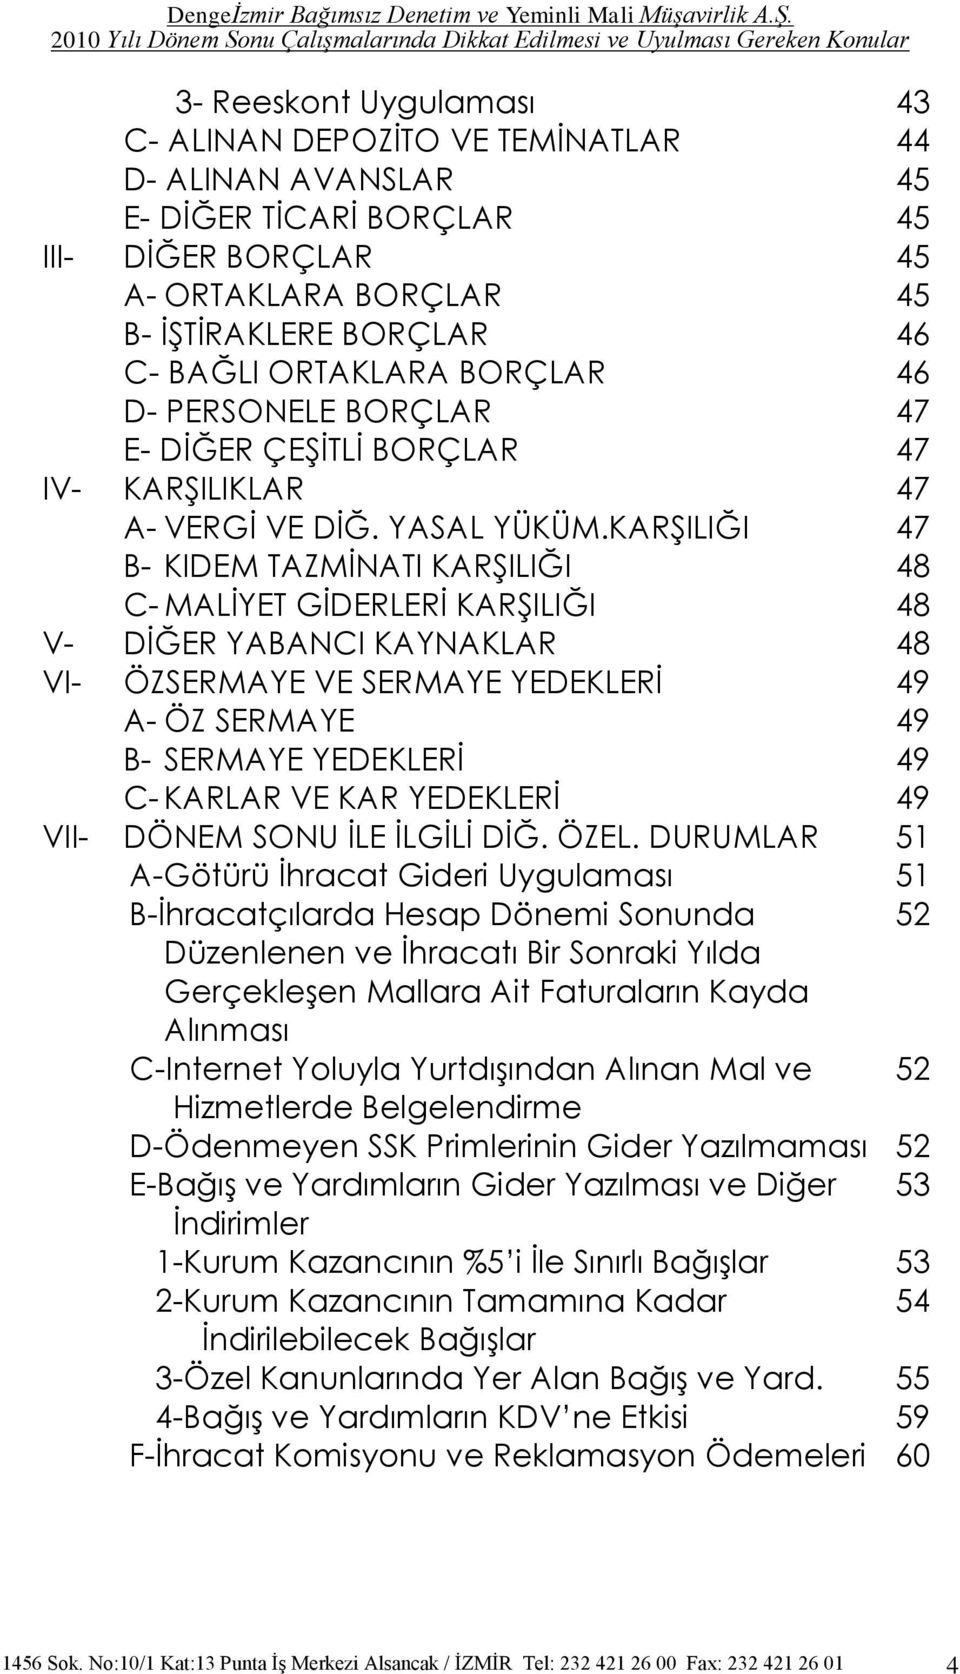 KARġILIĞI 47 B- KIDEM TAZMĠNATI KARġILIĞI 48 C- MALĠYET GĠDERLERĠ KARġILIĞI 48 V- DĠĞER YABANCI KAYNAKLAR 48 VI- ÖZSERMAYE VE SERMAYE YEDEKLERĠ 49 A- ÖZ SERMAYE 49 B- SERMAYE YEDEKLERĠ 49 C- KARLAR